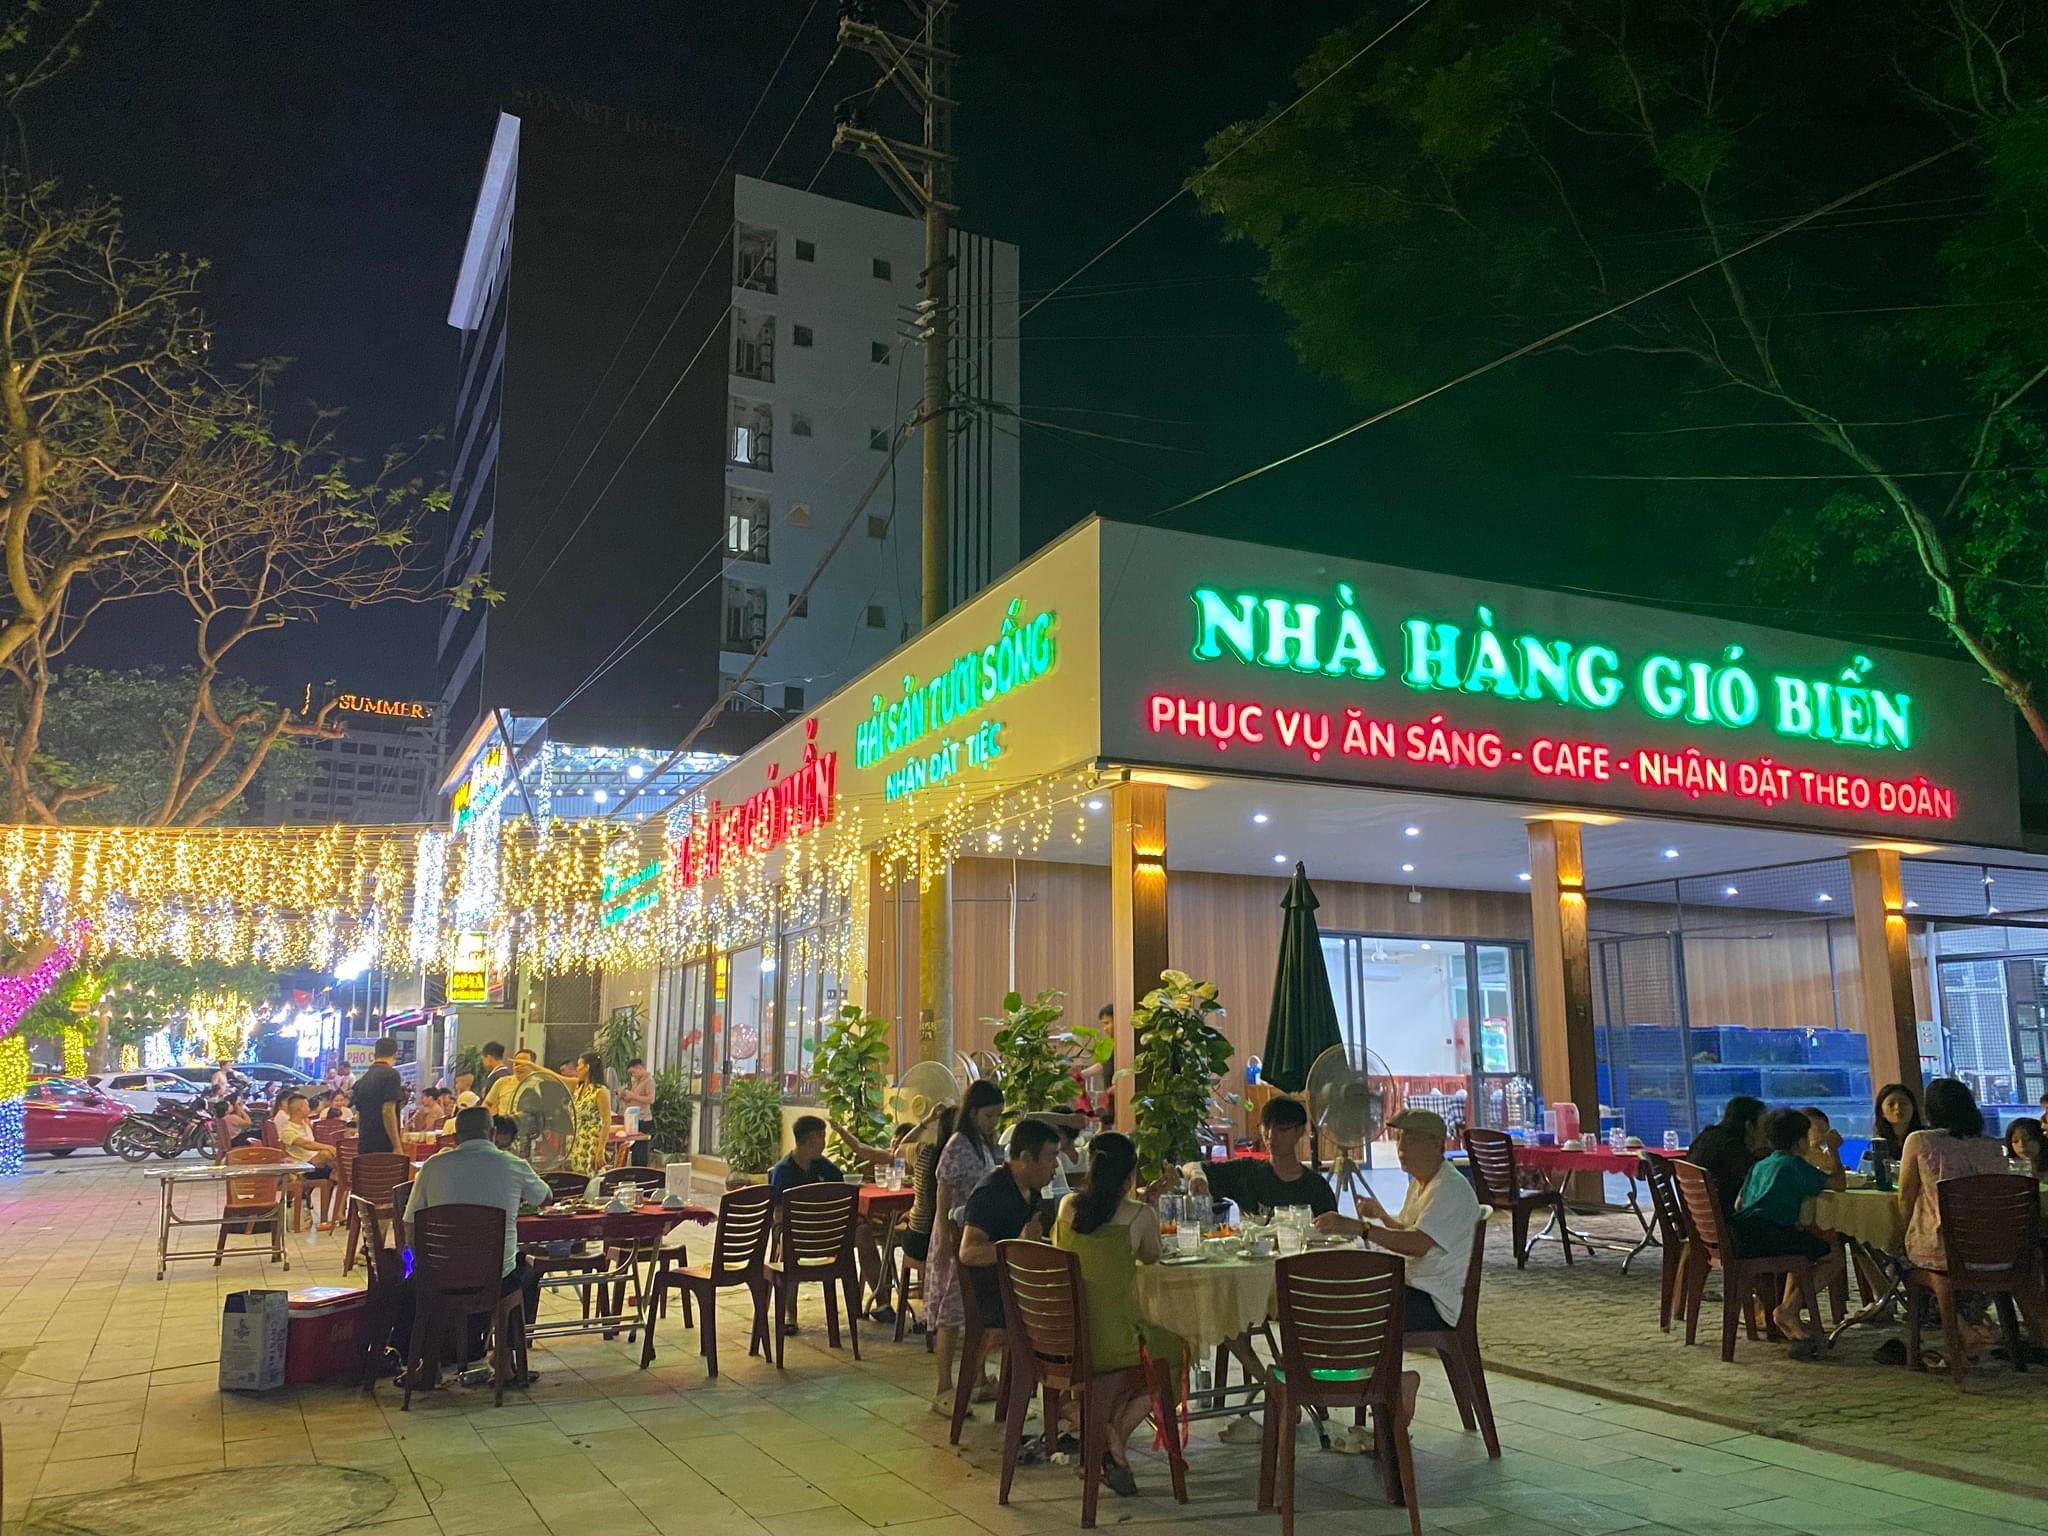 Nhà hàng Gió Biển - 252 Bình Minh ảnh 1